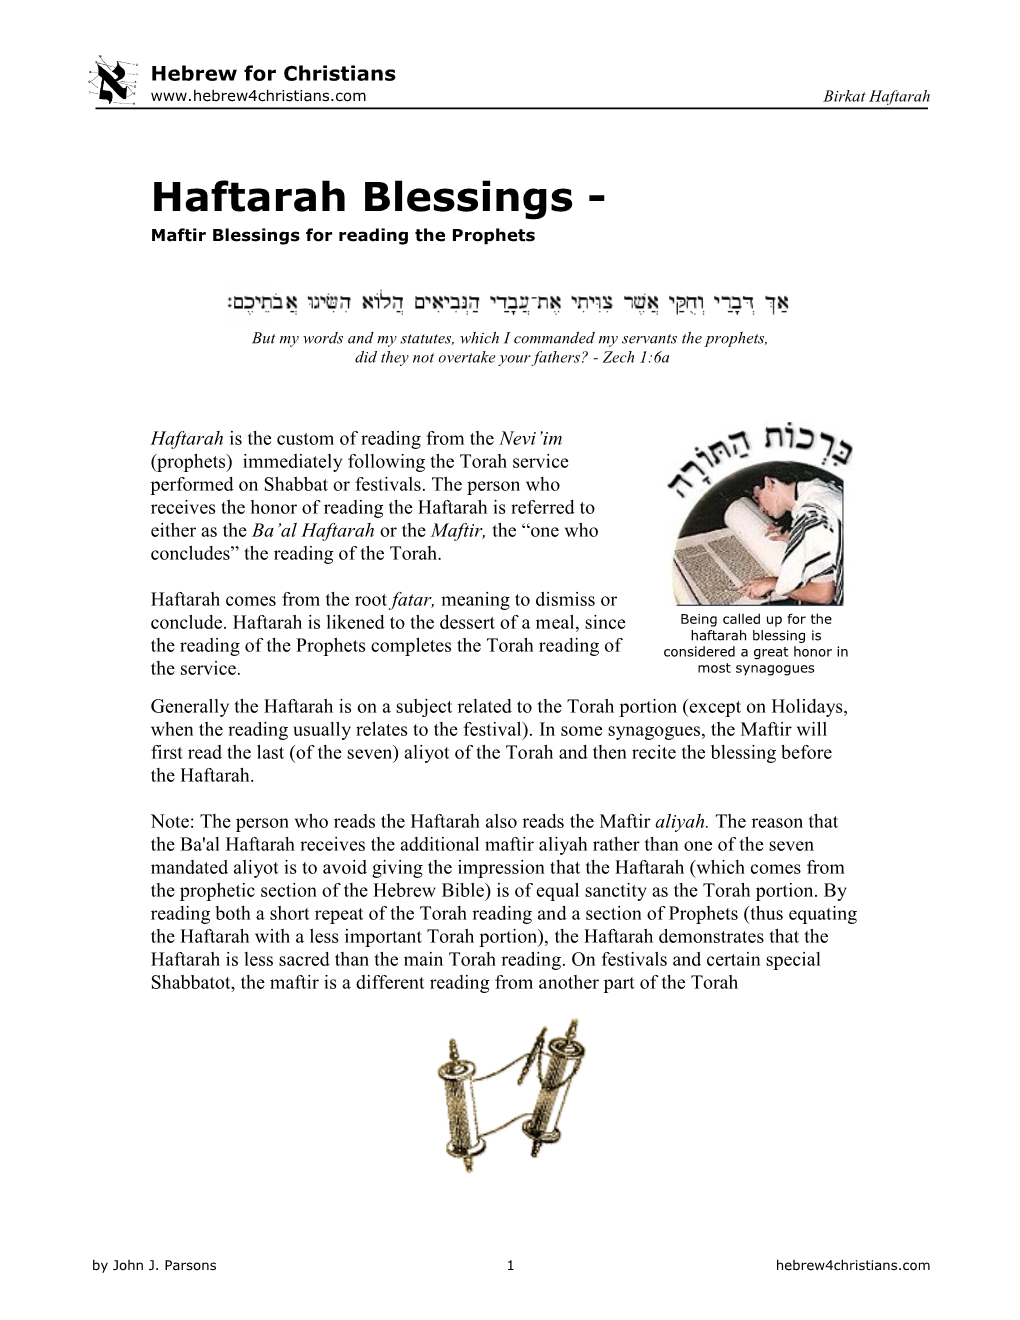 Haftarah Blessings - Maftir Blessings for Reading the Prophets